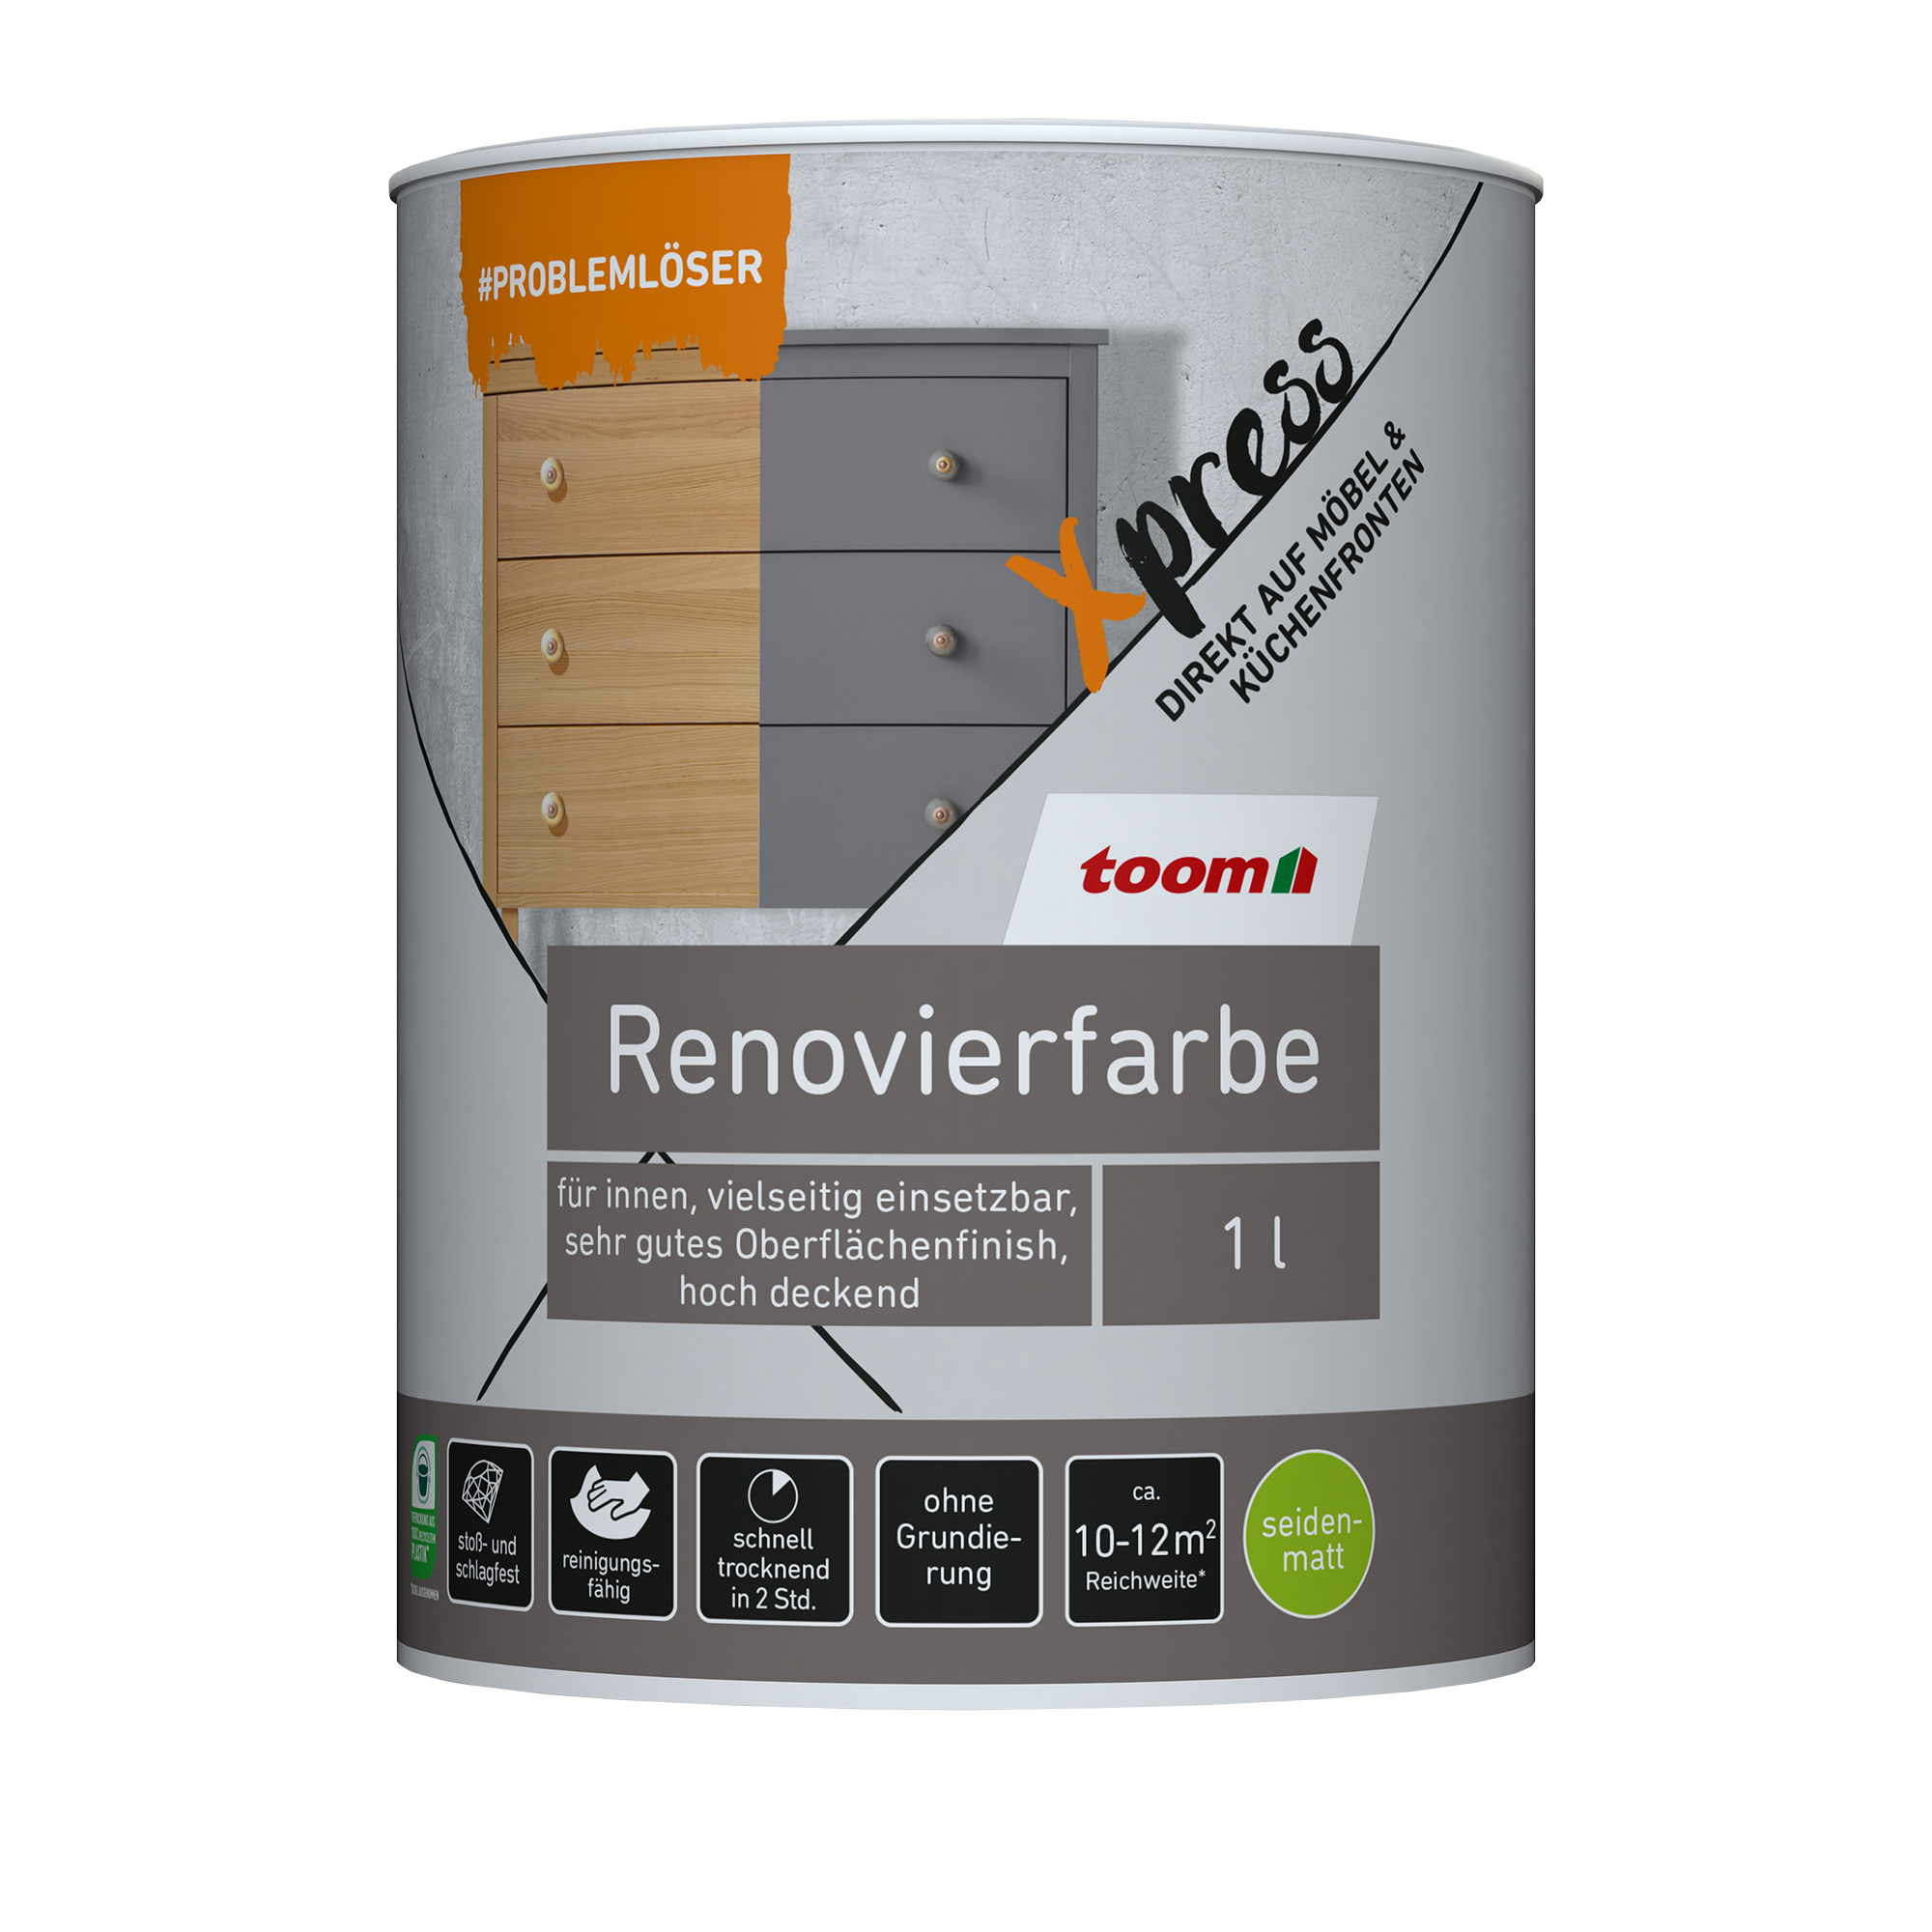 Renovierfarbe für Möbel- und Küchenfronten zartgrau seidenmatt 1 l + product picture